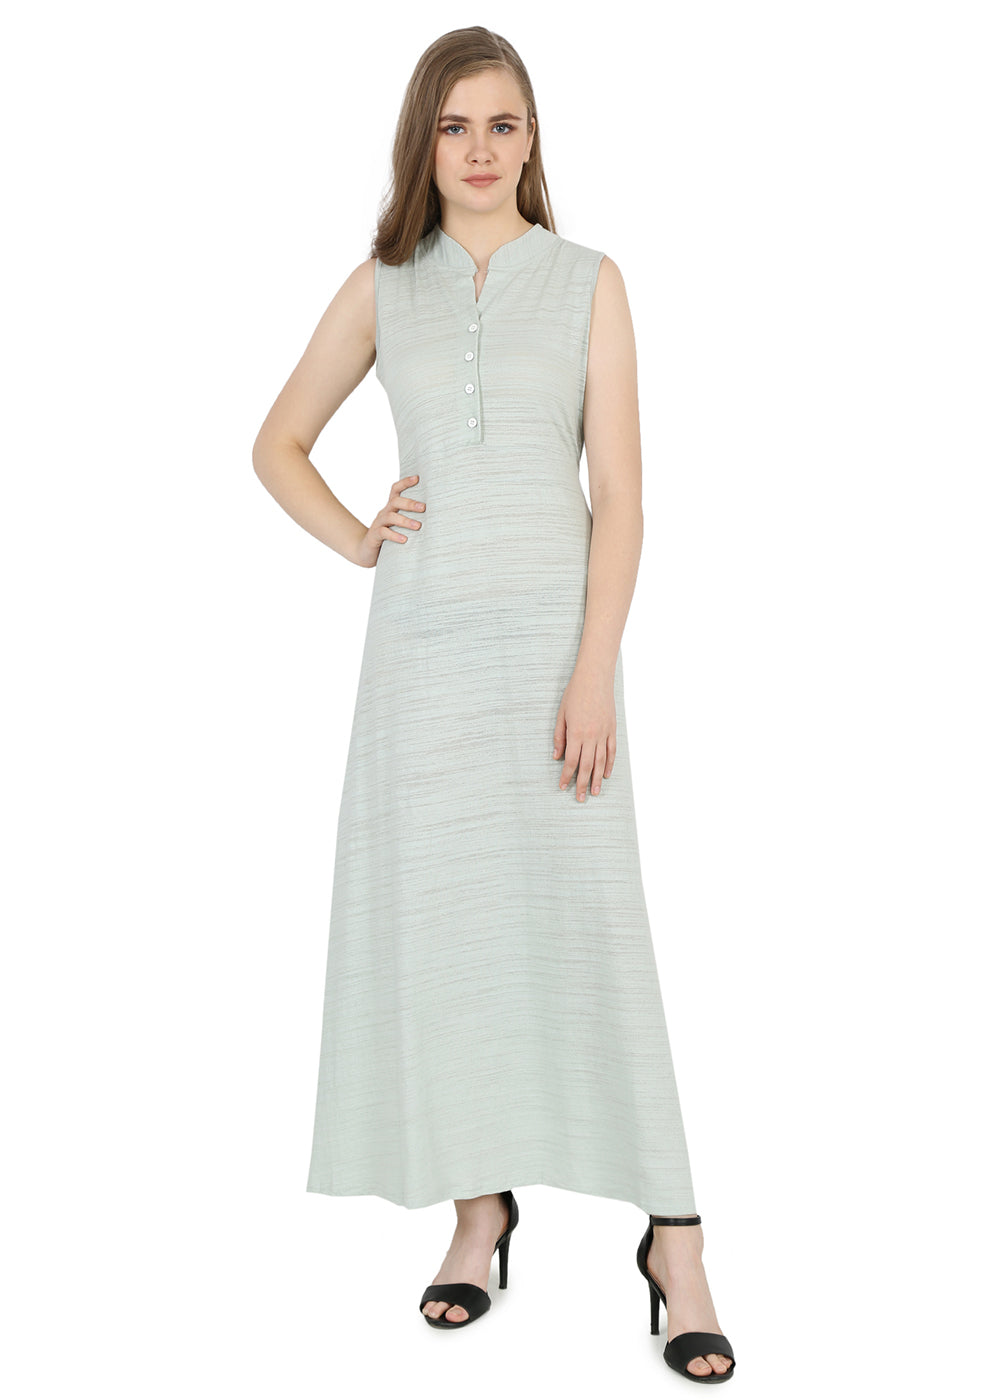 Sleeveless Women Long Dress in Solid Pattern- Pista